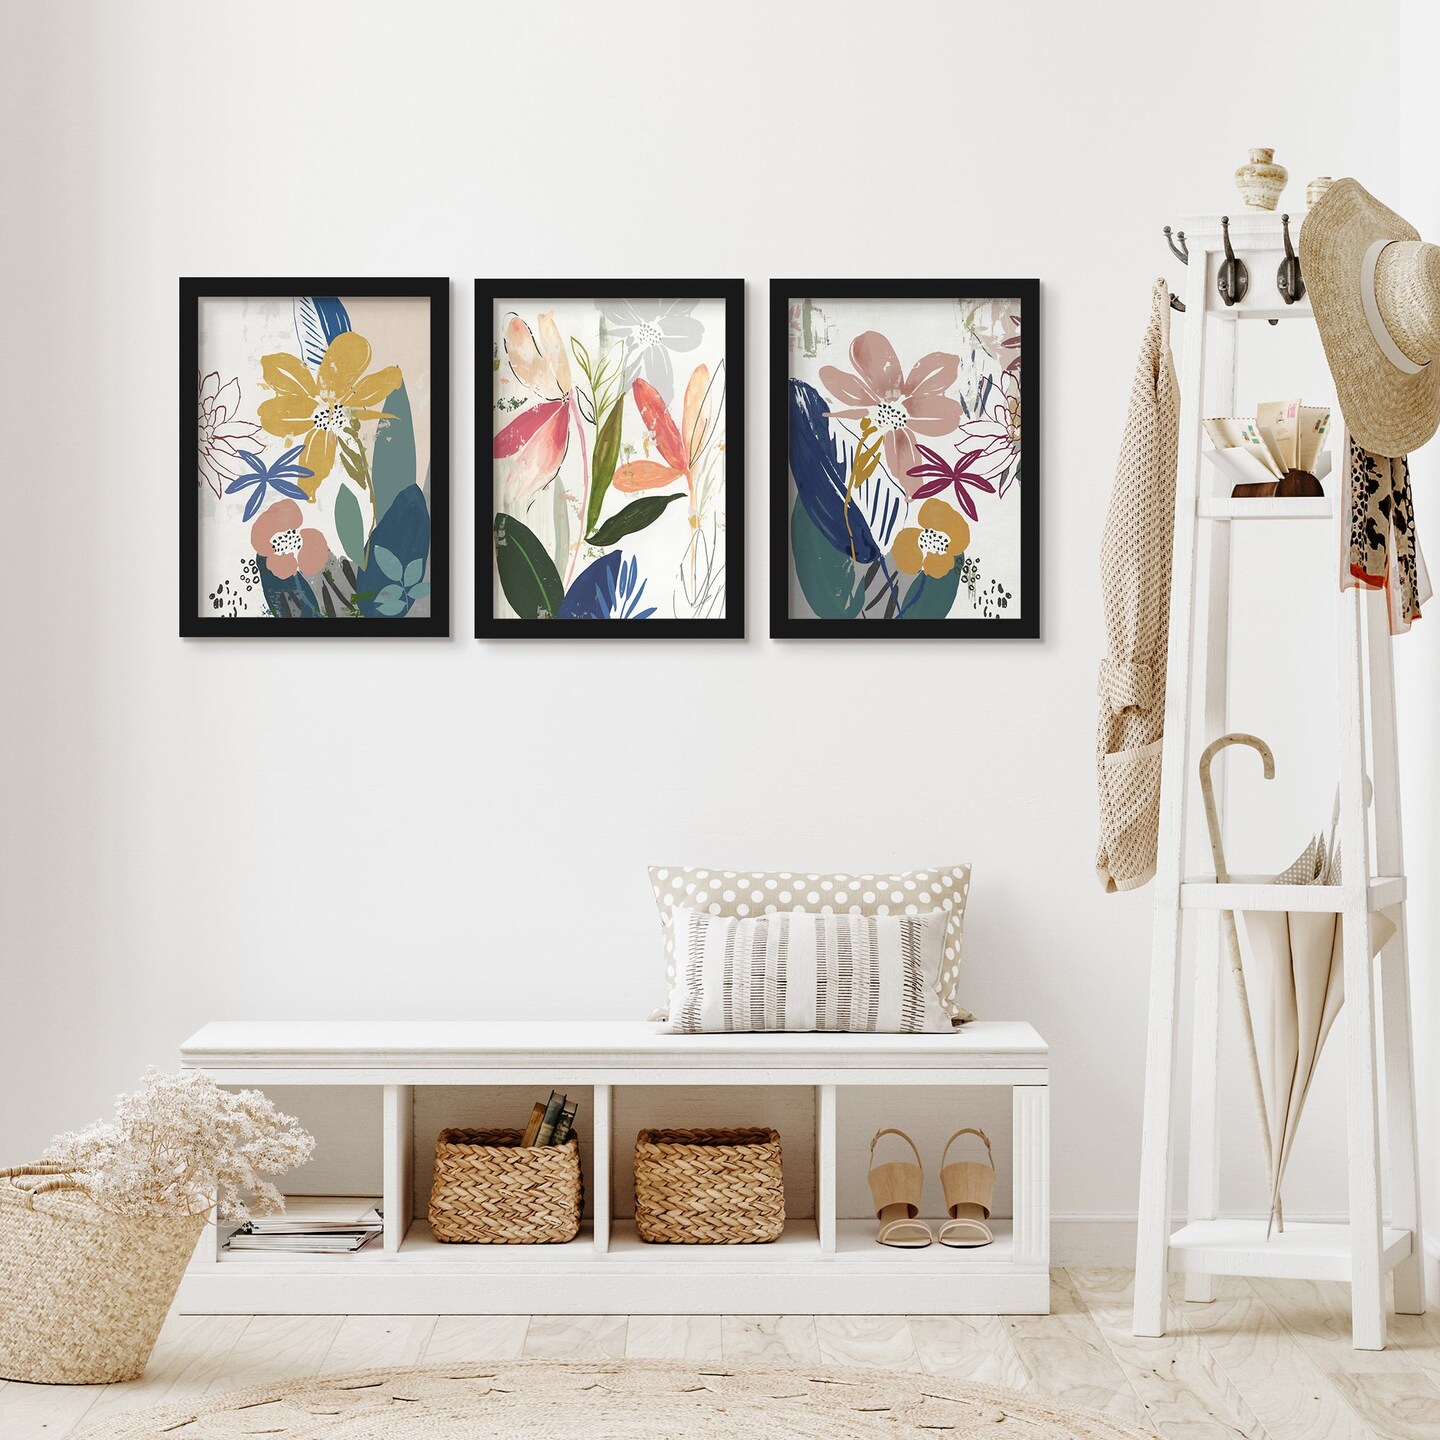 Watercolor Waterflowers by Asia Jensen - 3 Piece Gallery Framed Print Art Set